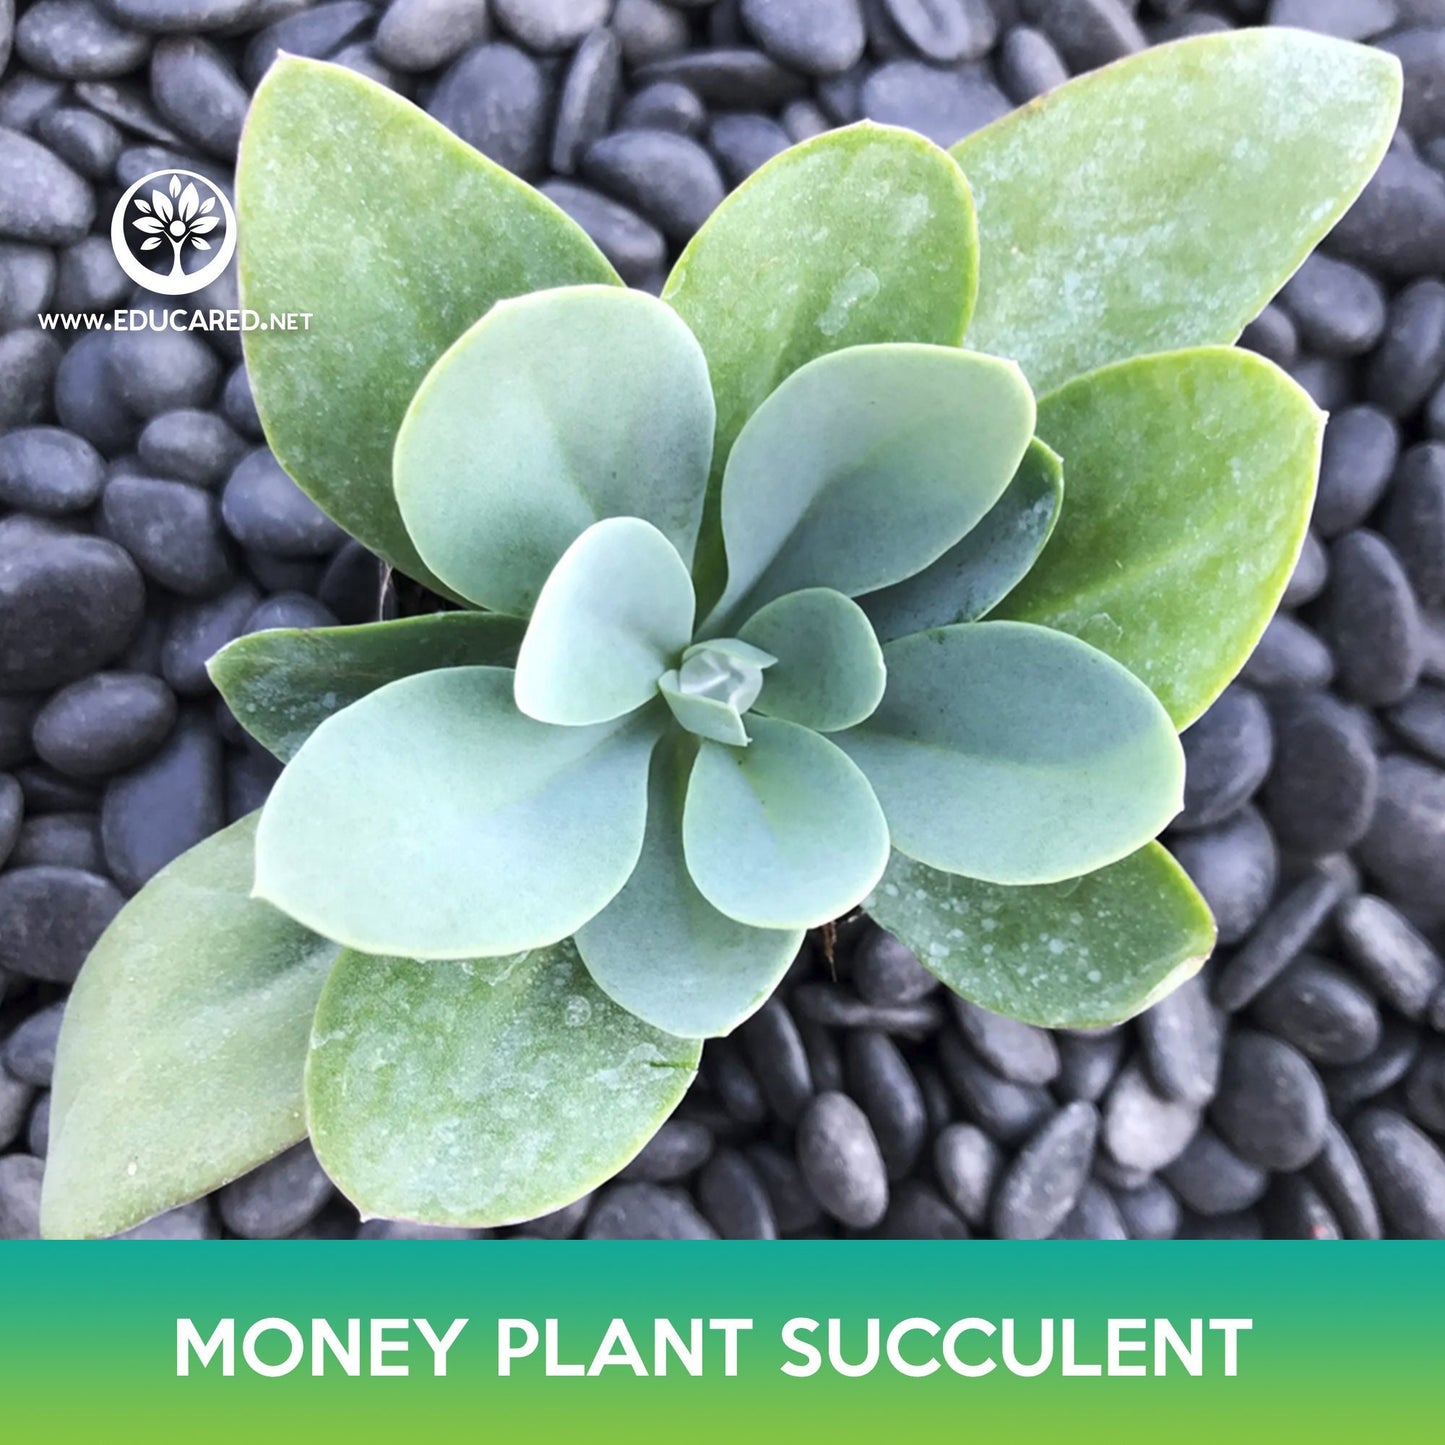 Money Plant Succulent Seeds, Crassula obvallata